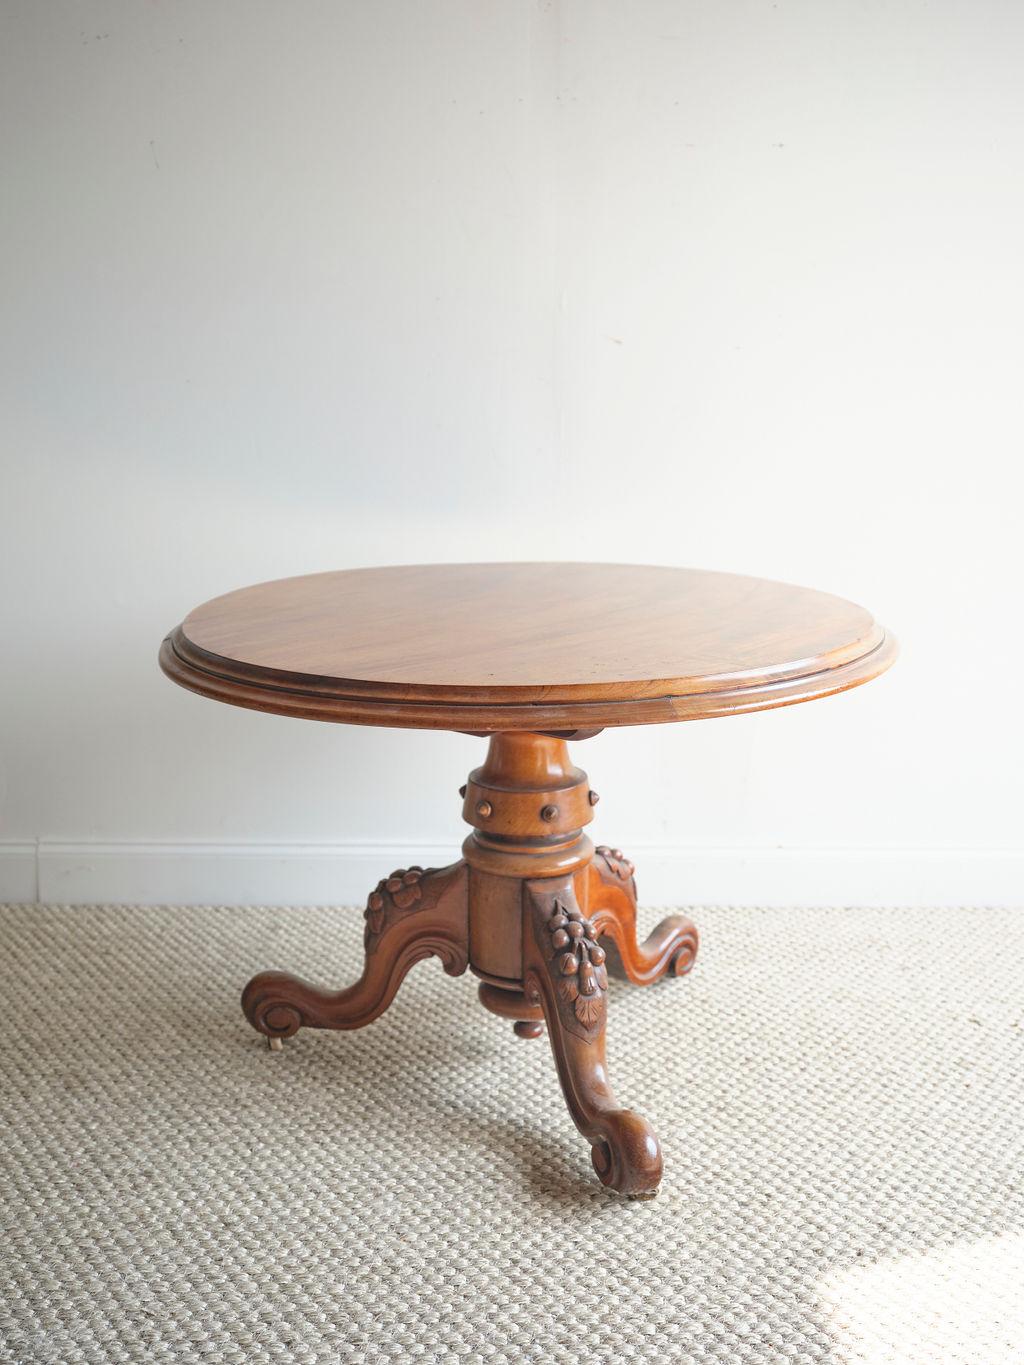 Ein atemberaubender englischer Kipptisch aus dem 19. Jahrhundert, der eine schöne Ergänzung für jeden Frühstücksraum darstellen würde. Der 1870 gefertigte Tisch hat eine schöne braune Beize und ein dreibeiniges Gestell mit einzigartigen geschnitzten